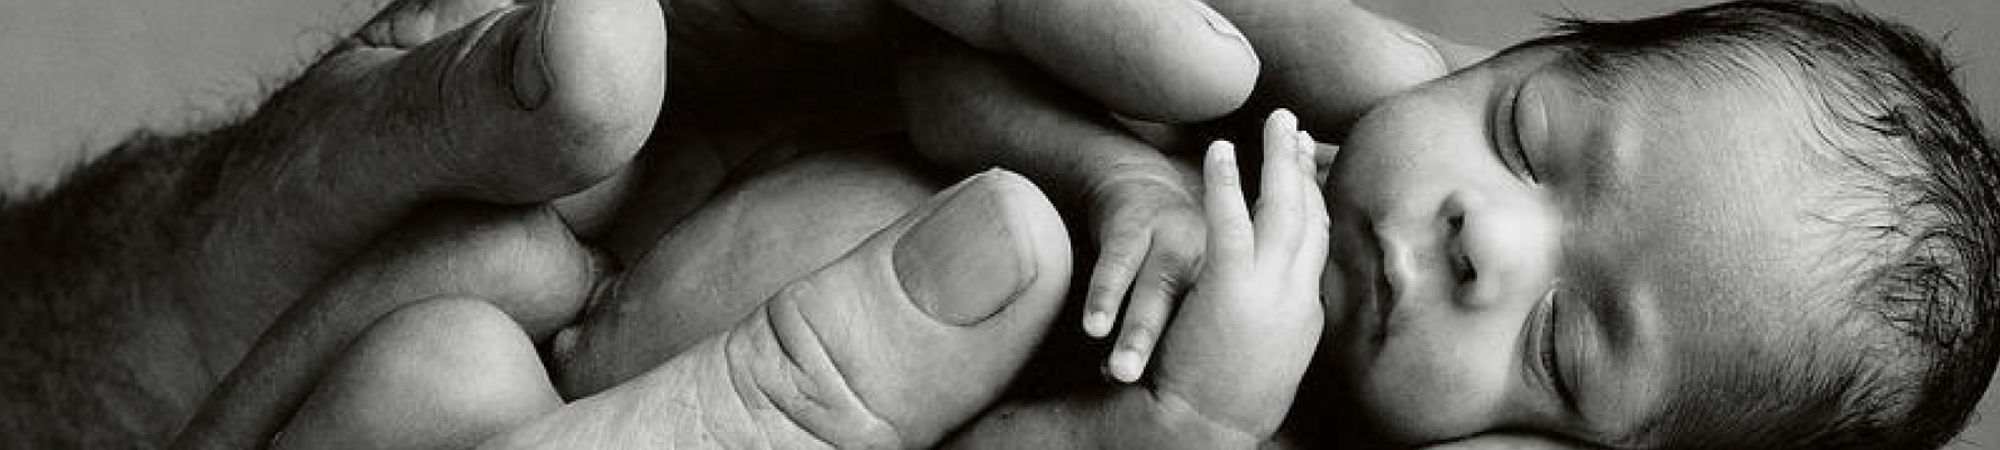 Afbeelding van een vroeggeboren baby in de handen van haar vader. Strong Babies is een goed doel dat zich inzet om vroeggeboorte tegen te gaan. Steun en help meer vroeggeboren baby's overleven